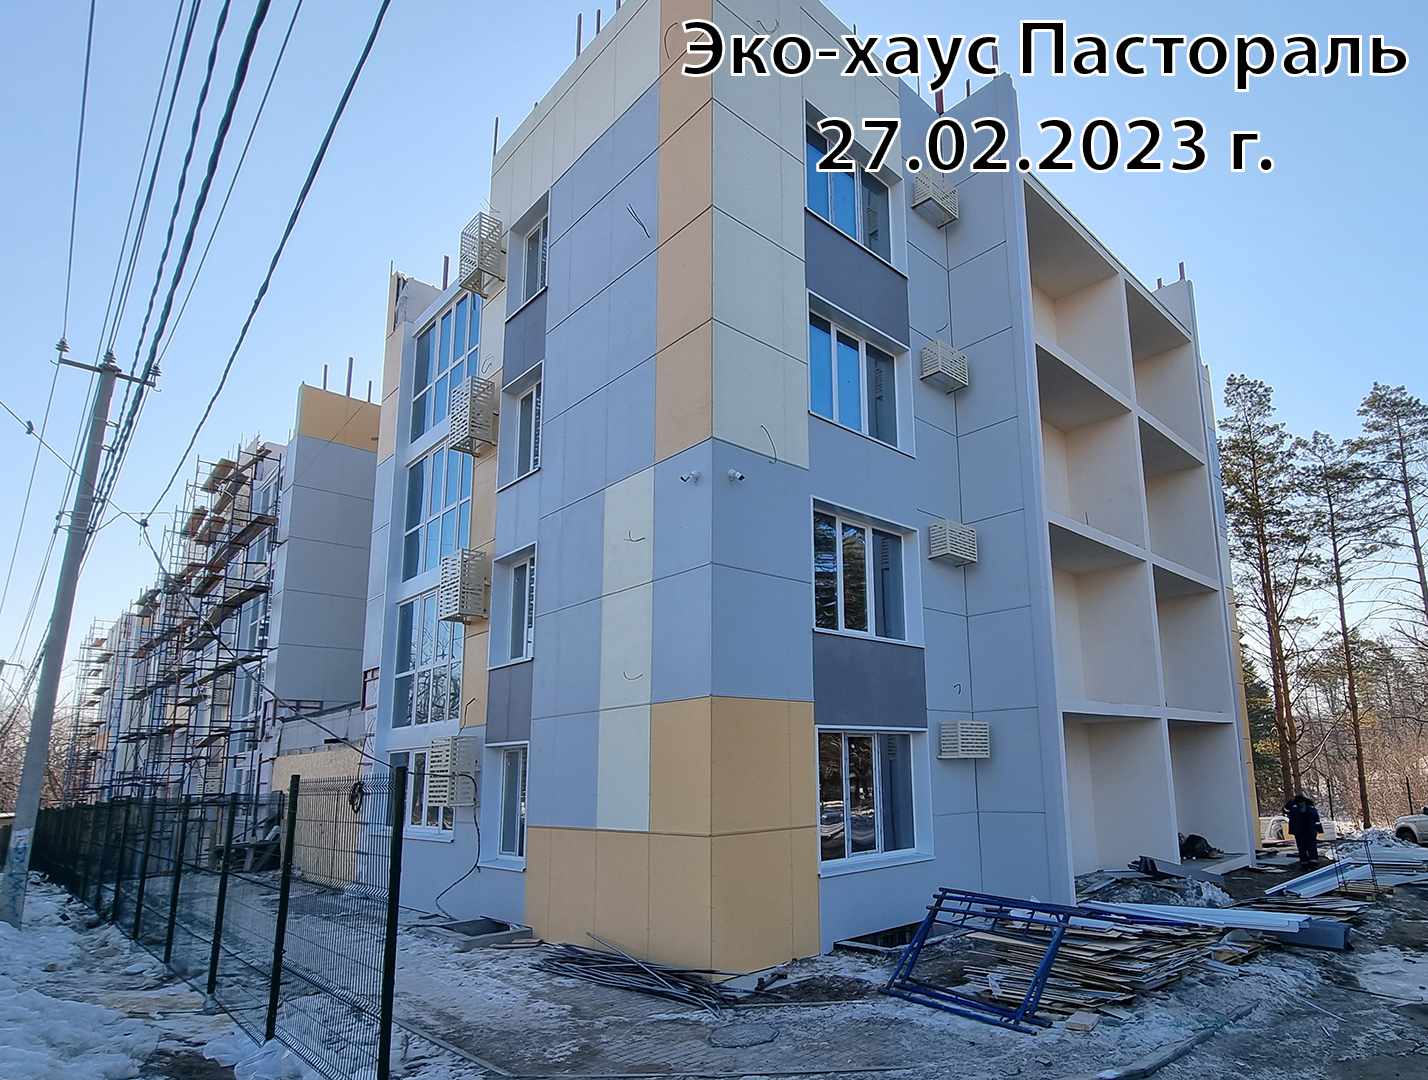 Жилой комплекс Эко-хаус Пастораль, Февраль, 2023, фото №1